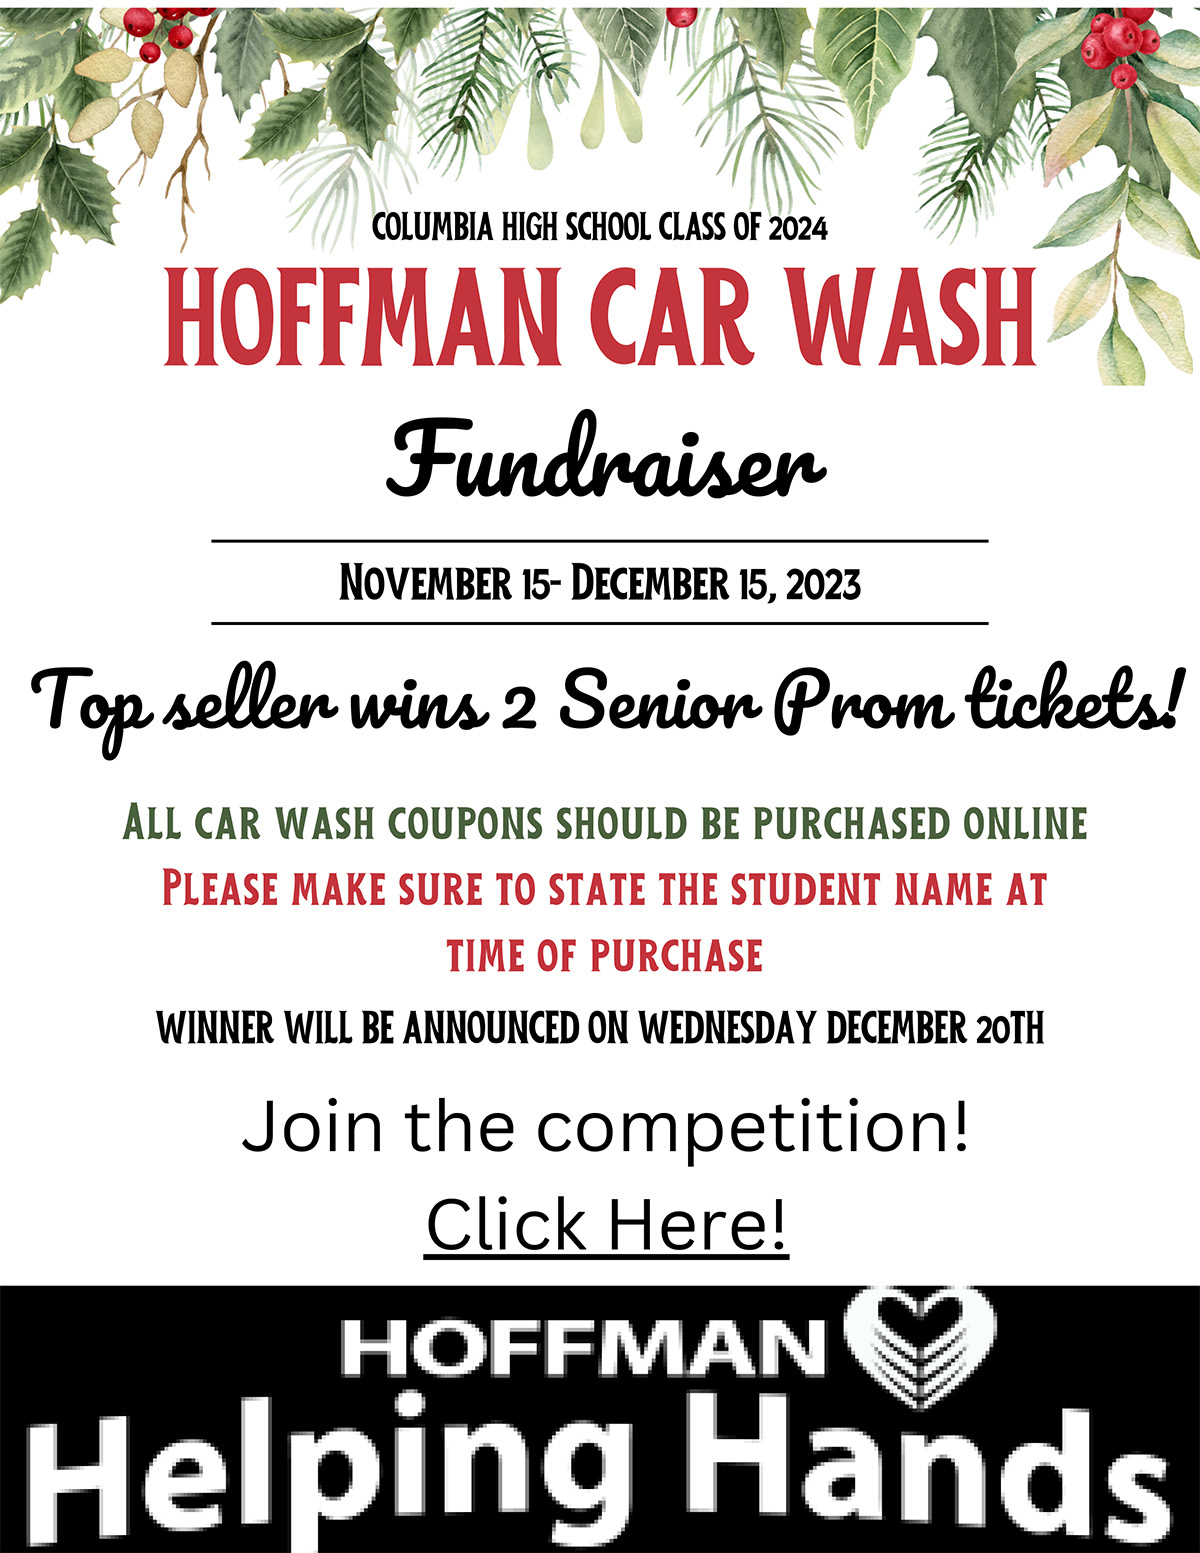 CHS Class of 2024 Hoffman Car Wash Fundraiser